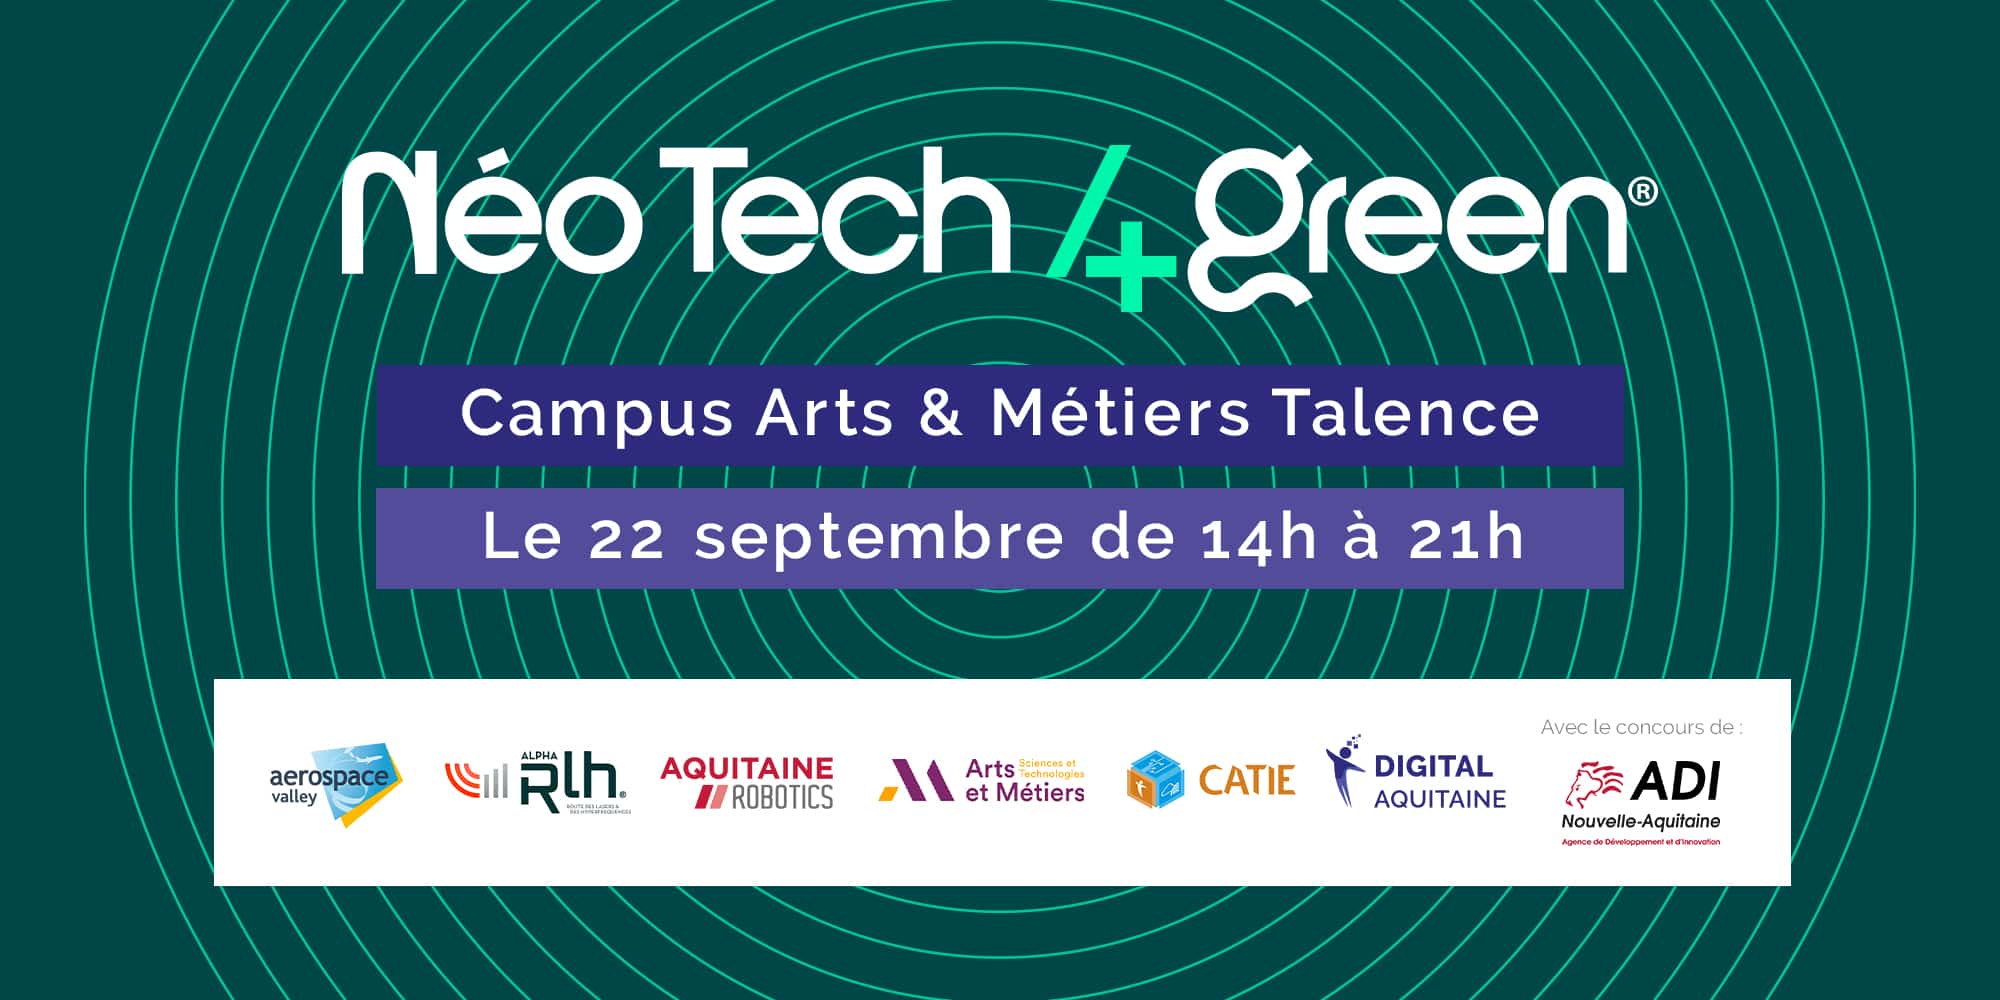 Néo Tech 4Green 2022, une édition tournée autour de 3 axes de l’industrie 4.0